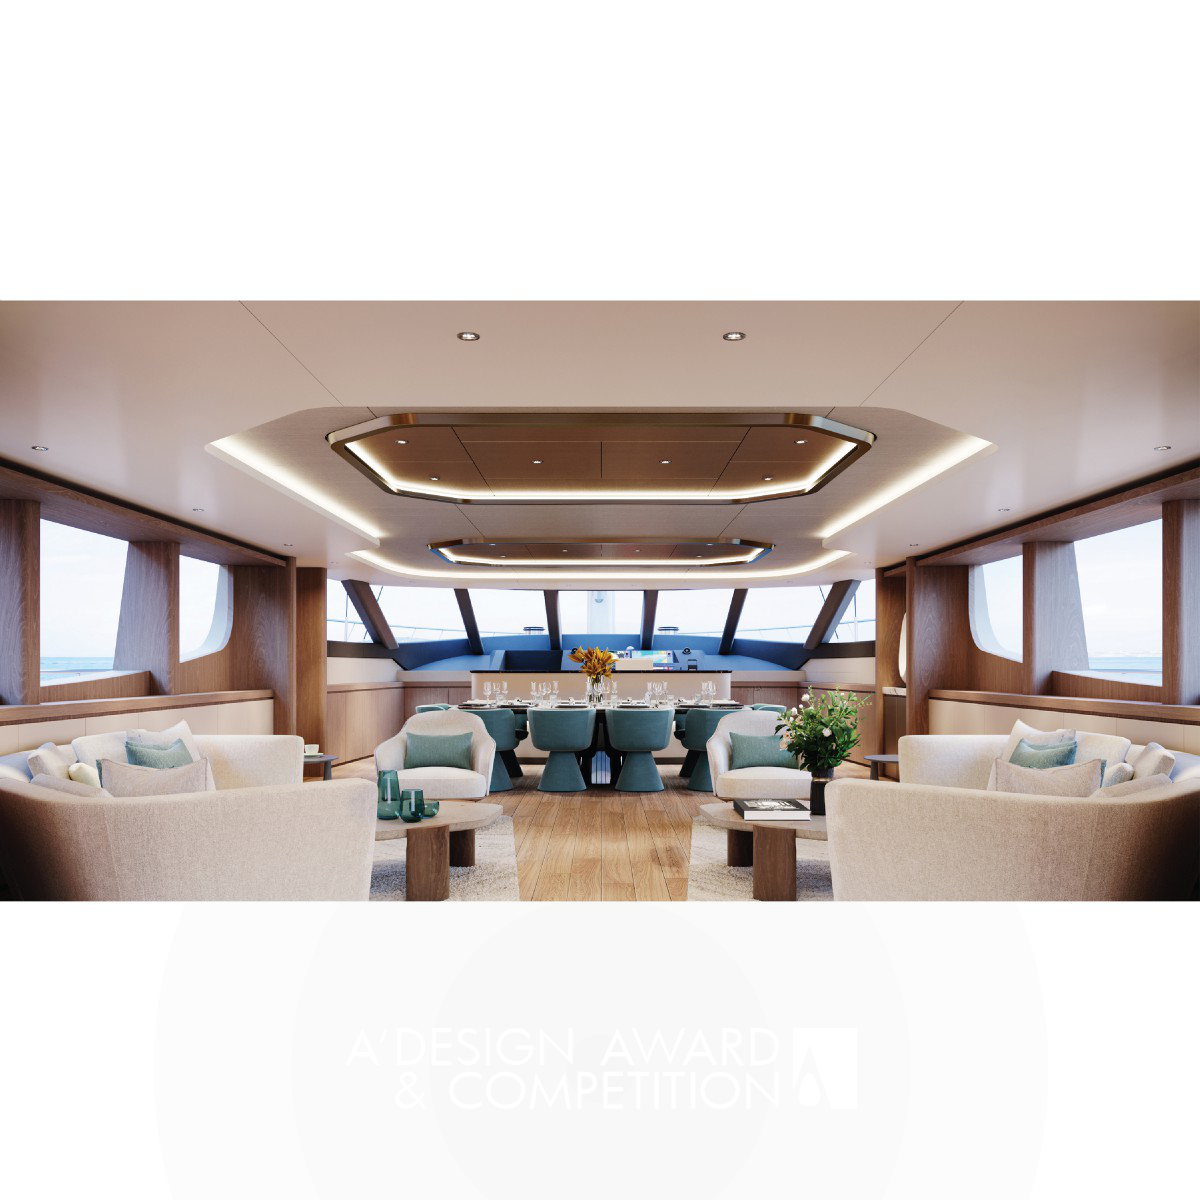 MS Andiamo 44 m Motorsailer by BAZ Yacht Design